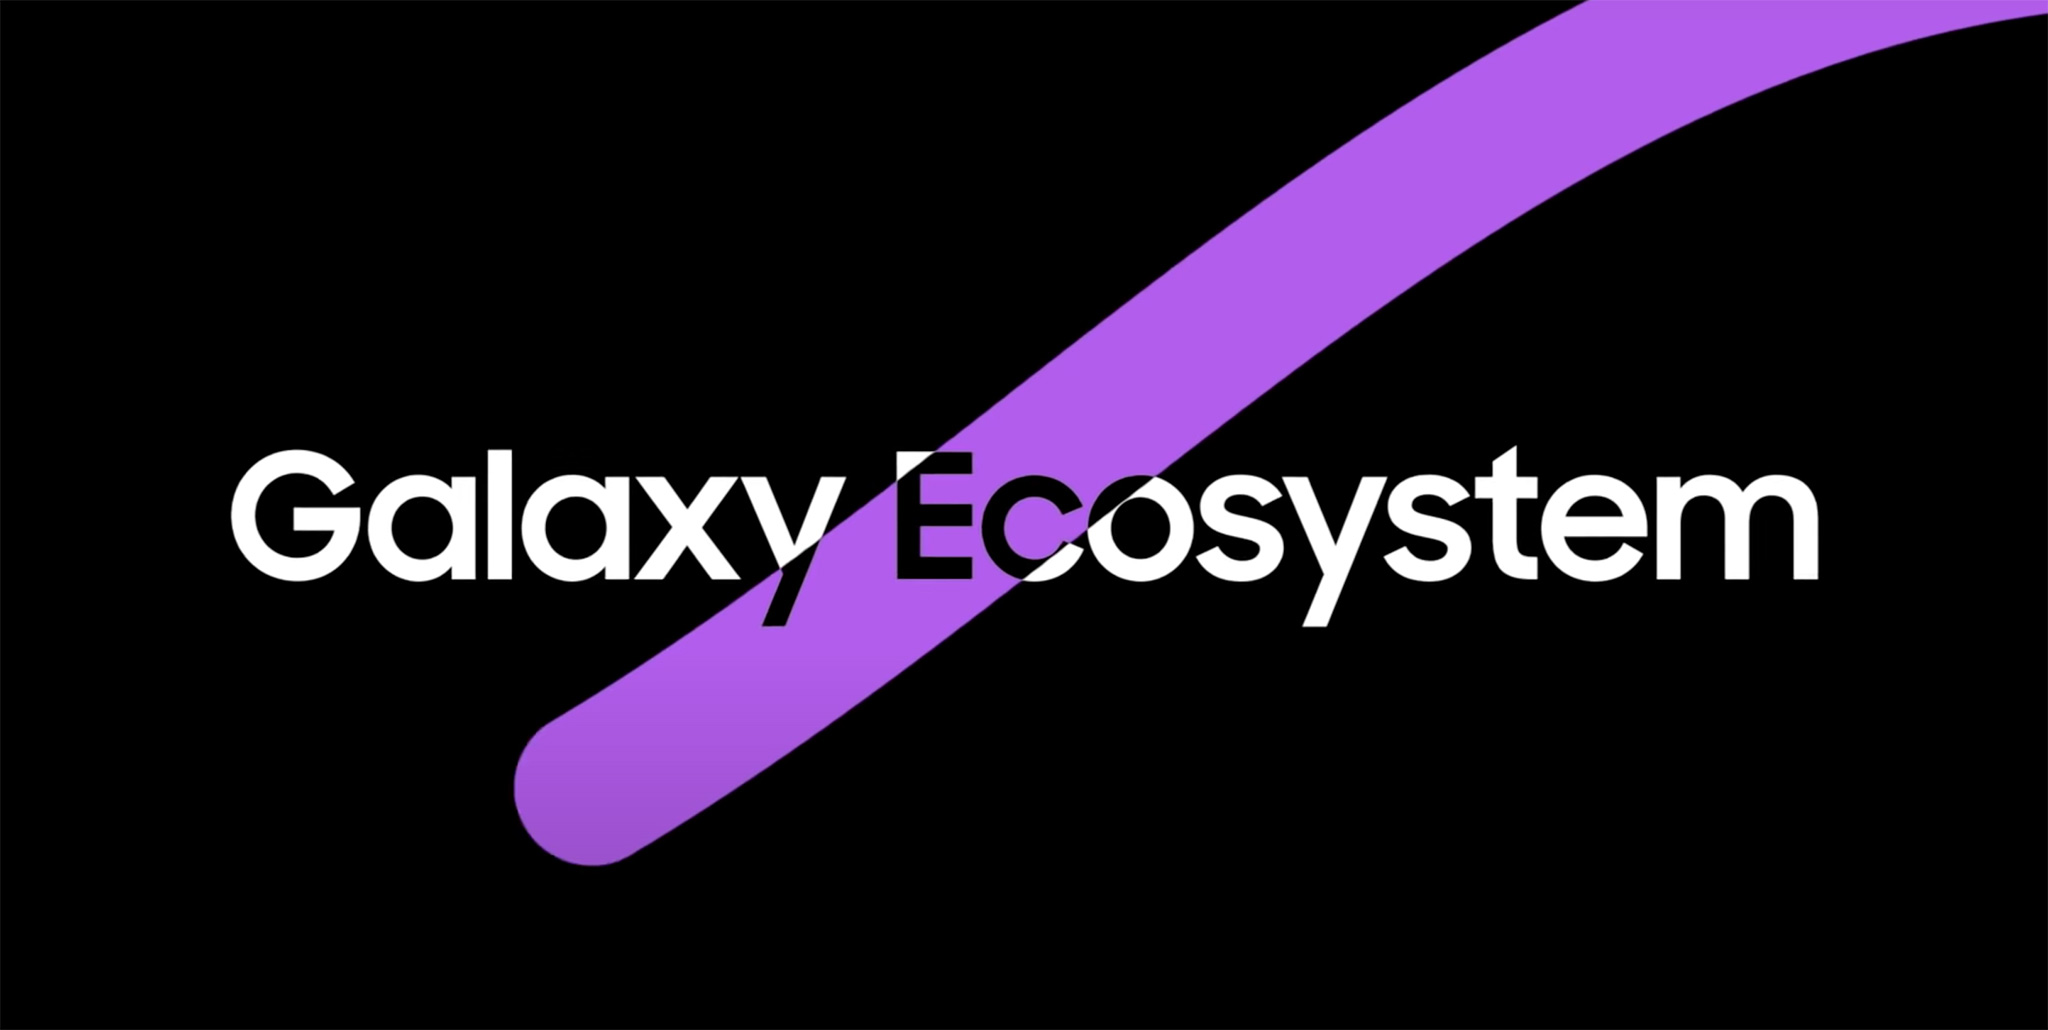 Samsung_galaxy_ecosystem.jpg